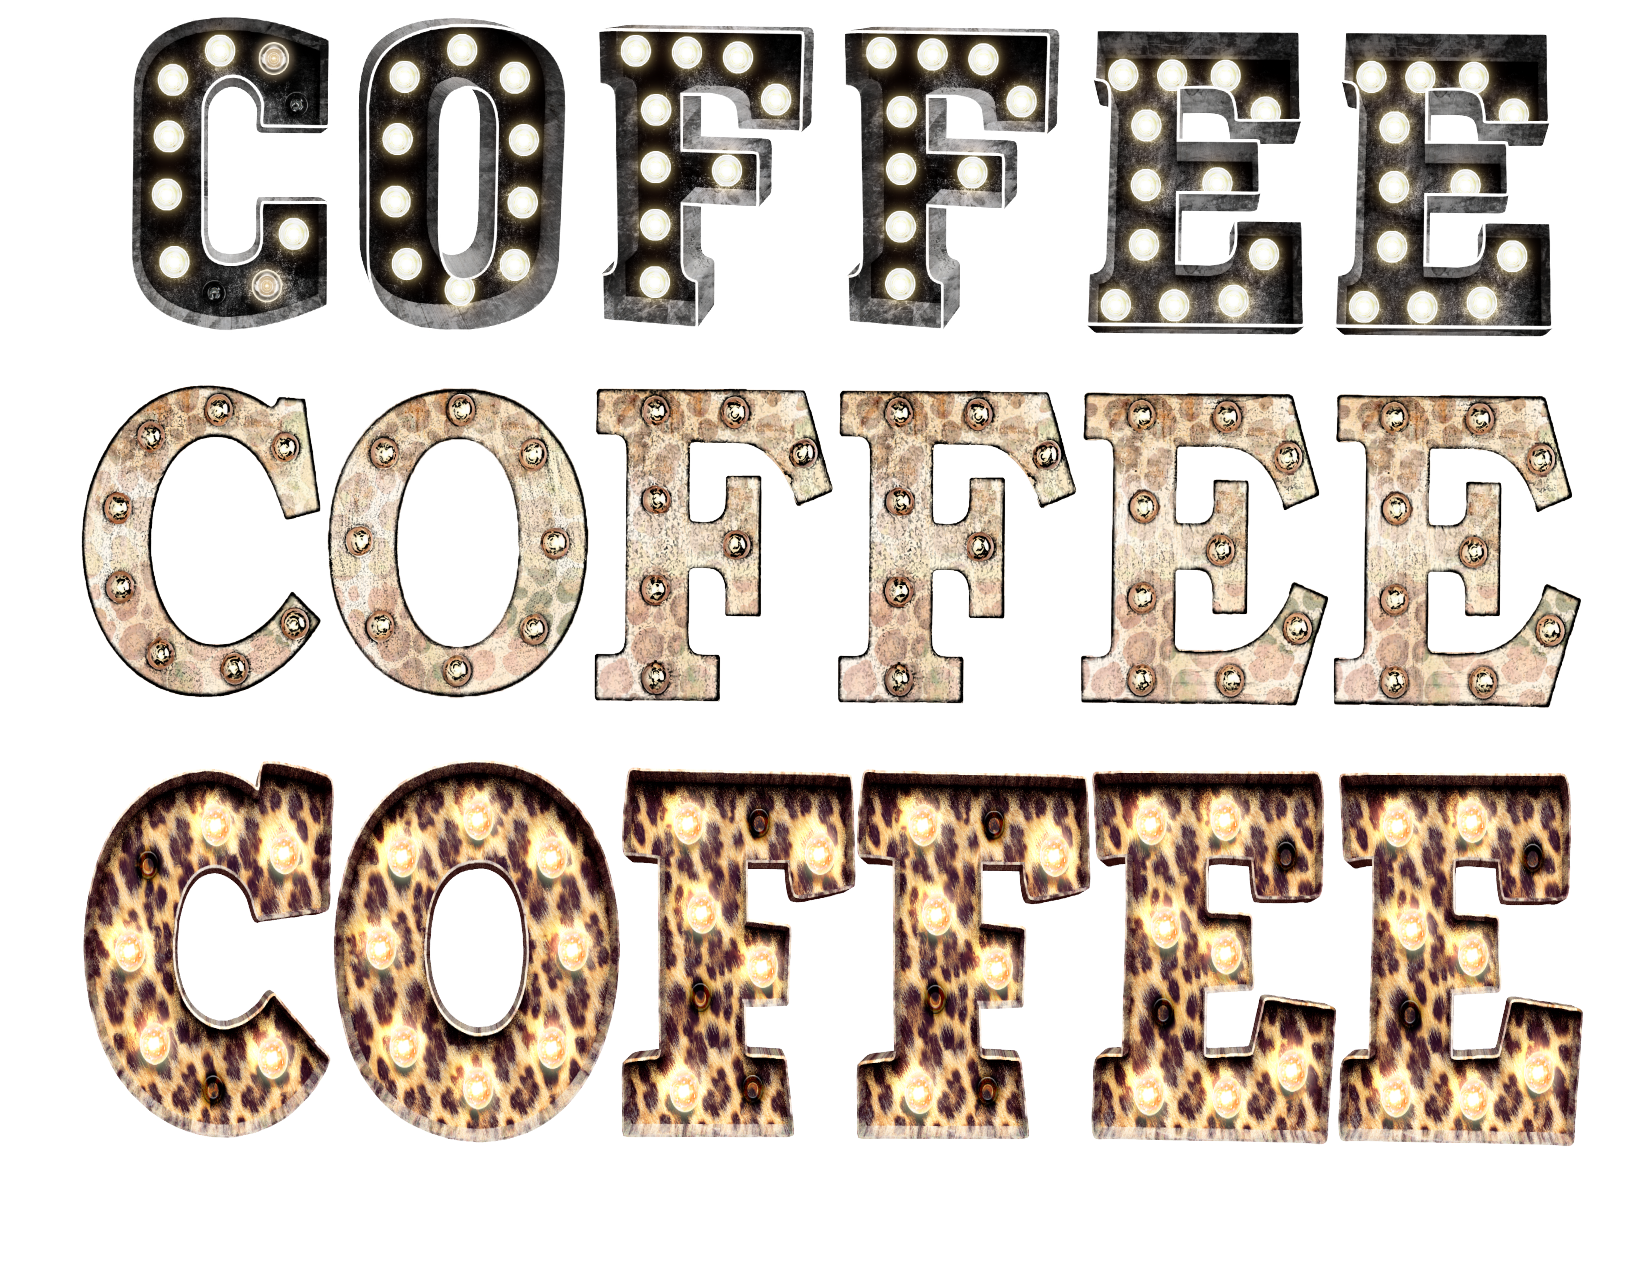 #33 Coffee Coffee Coffee